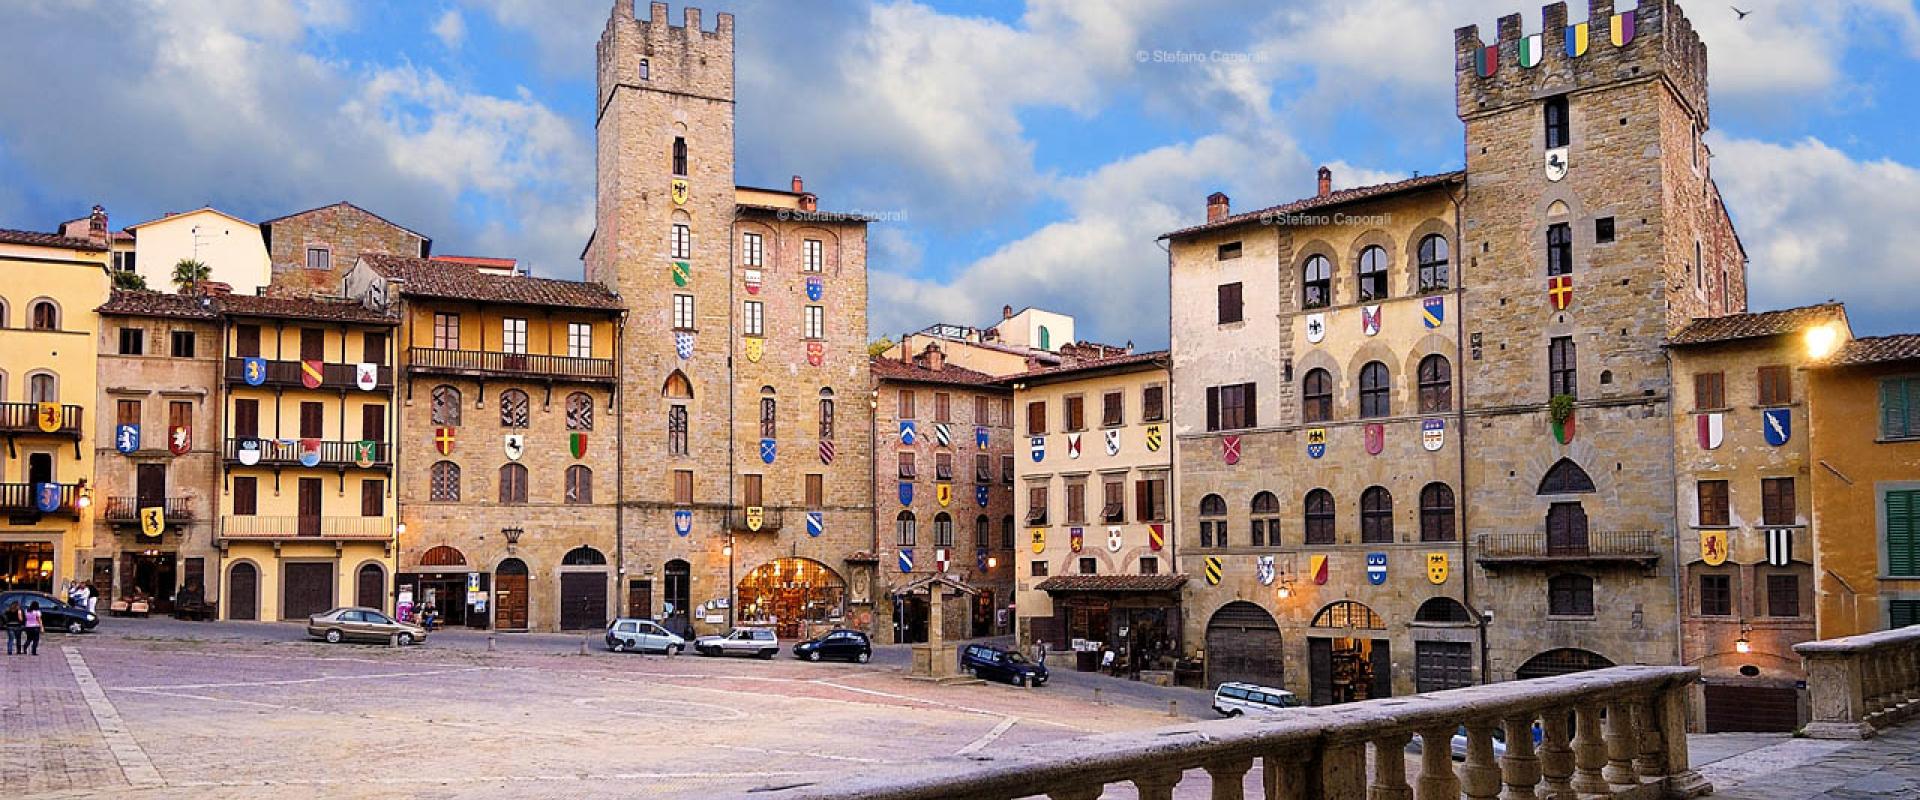 Visit of Arezzo